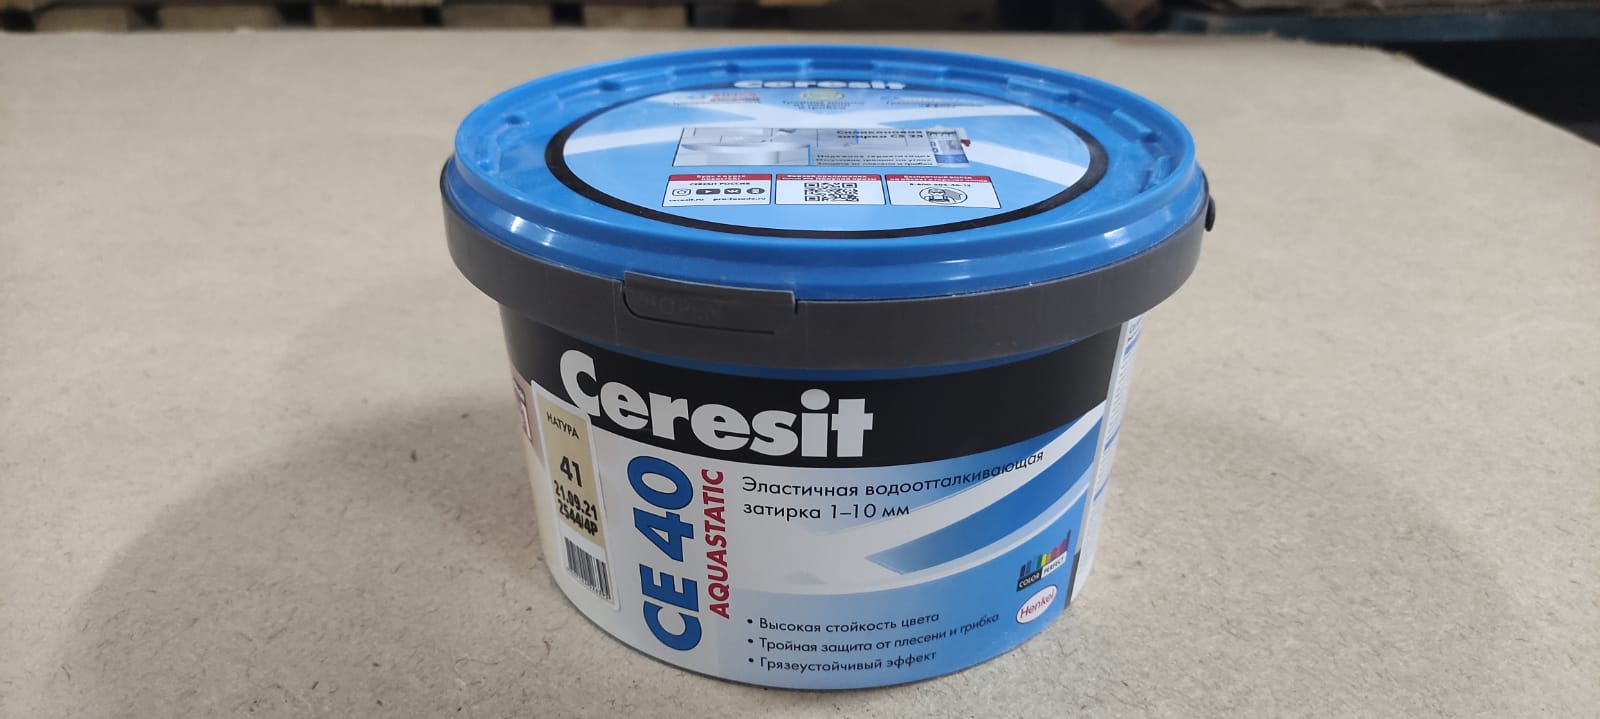 Эластичная водоотталкивающая затирка Ceresit CE 40 aquastatic 2 кг (цвет: натура)								